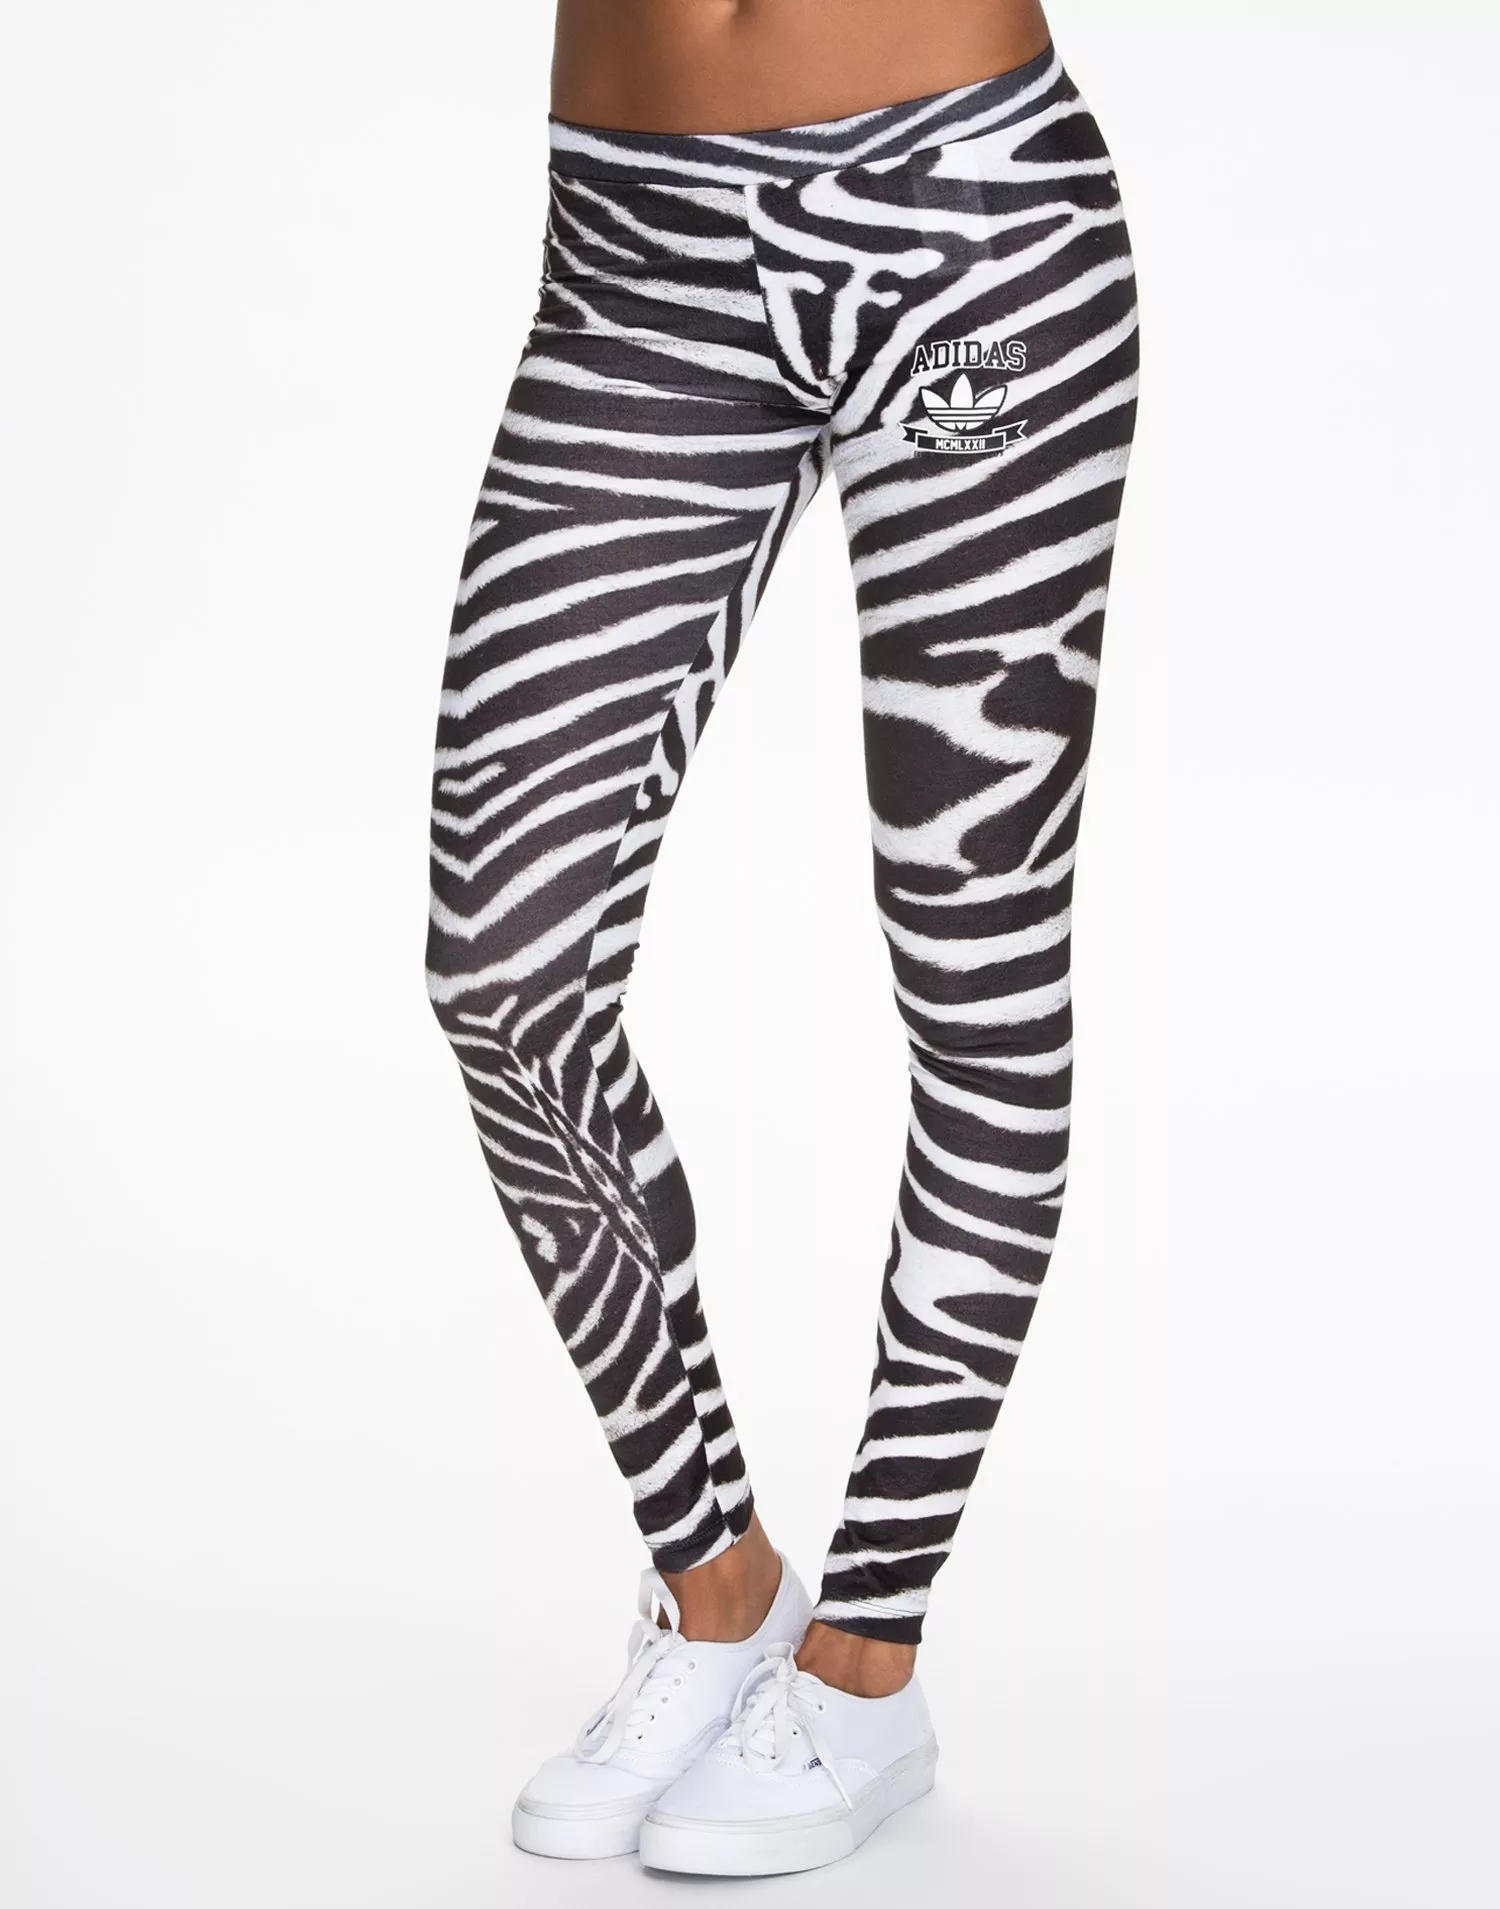 Buy Adidas Zebra - Multicolour | Nelly.com